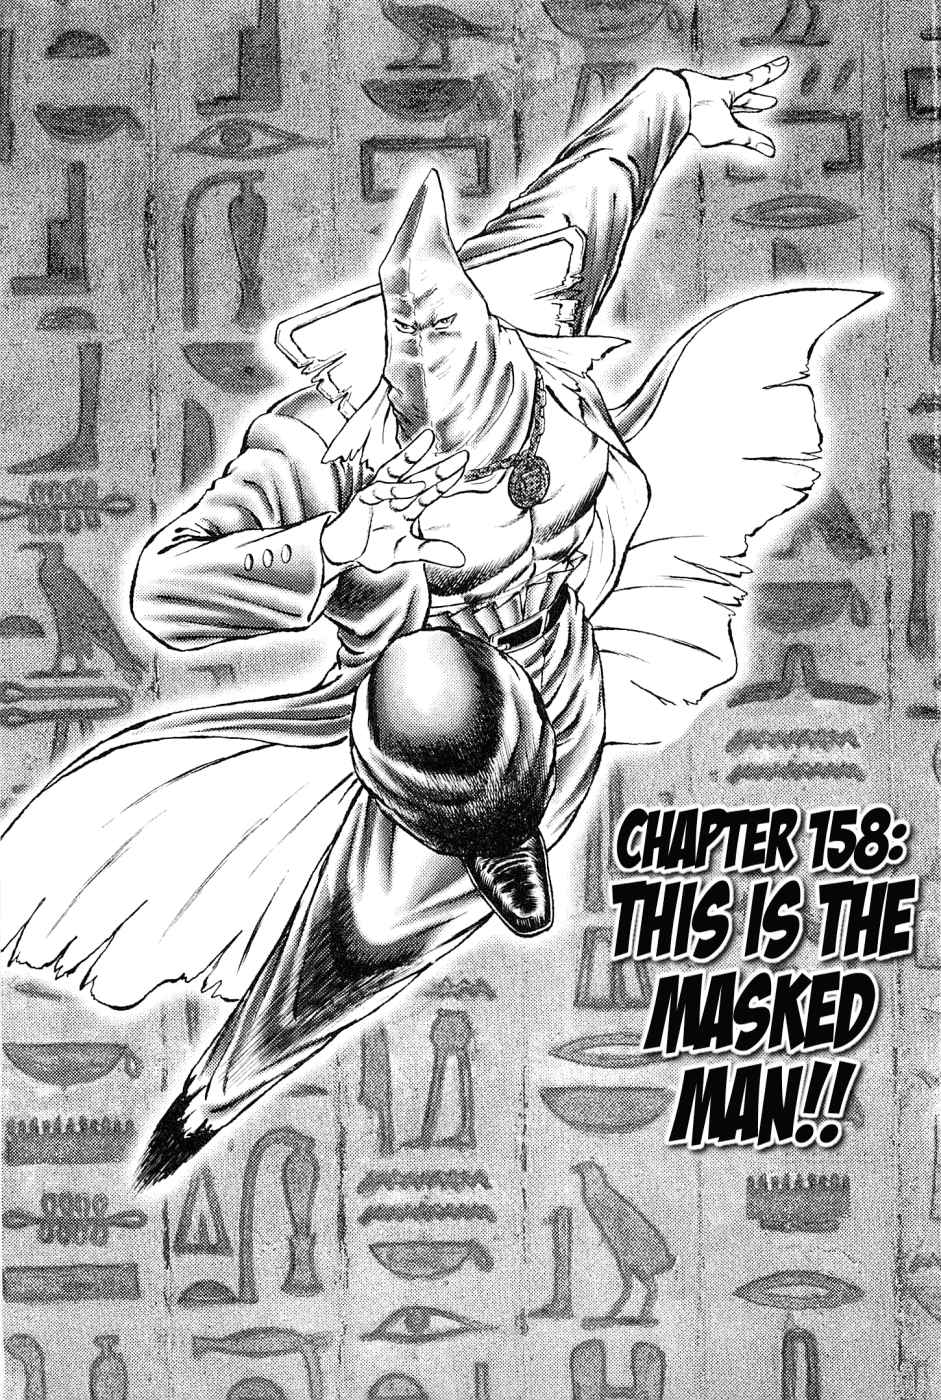 Akatsuki!! Otokojuku Seinen yo, Taishi wo Idake Vol. 20 Ch. 158 This is the Masked Man!!